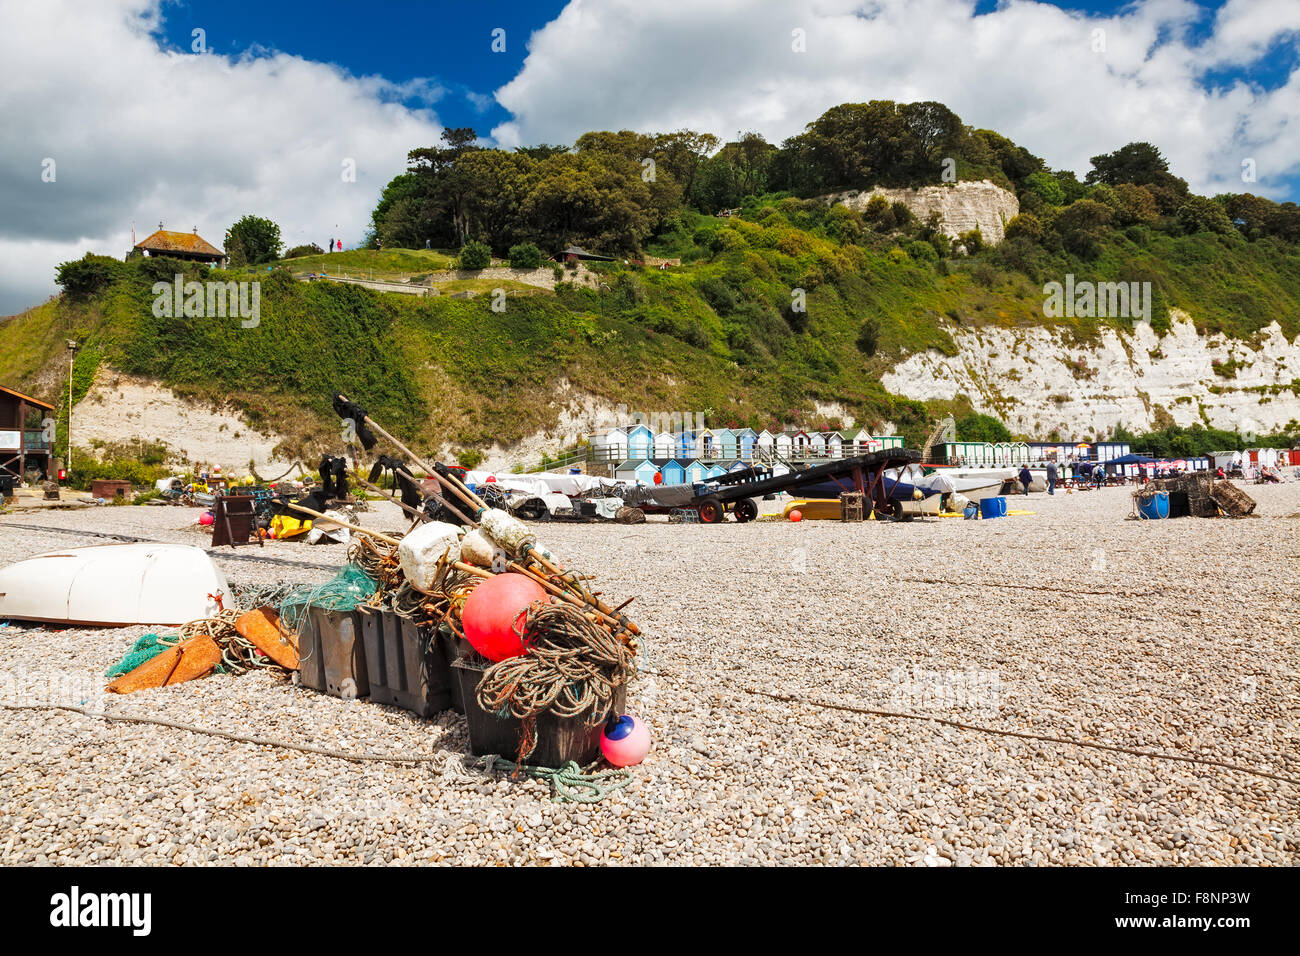 La plage de la baie de Lyme La bière, Devon, Angleterre Angleterre Europe Banque D'Images